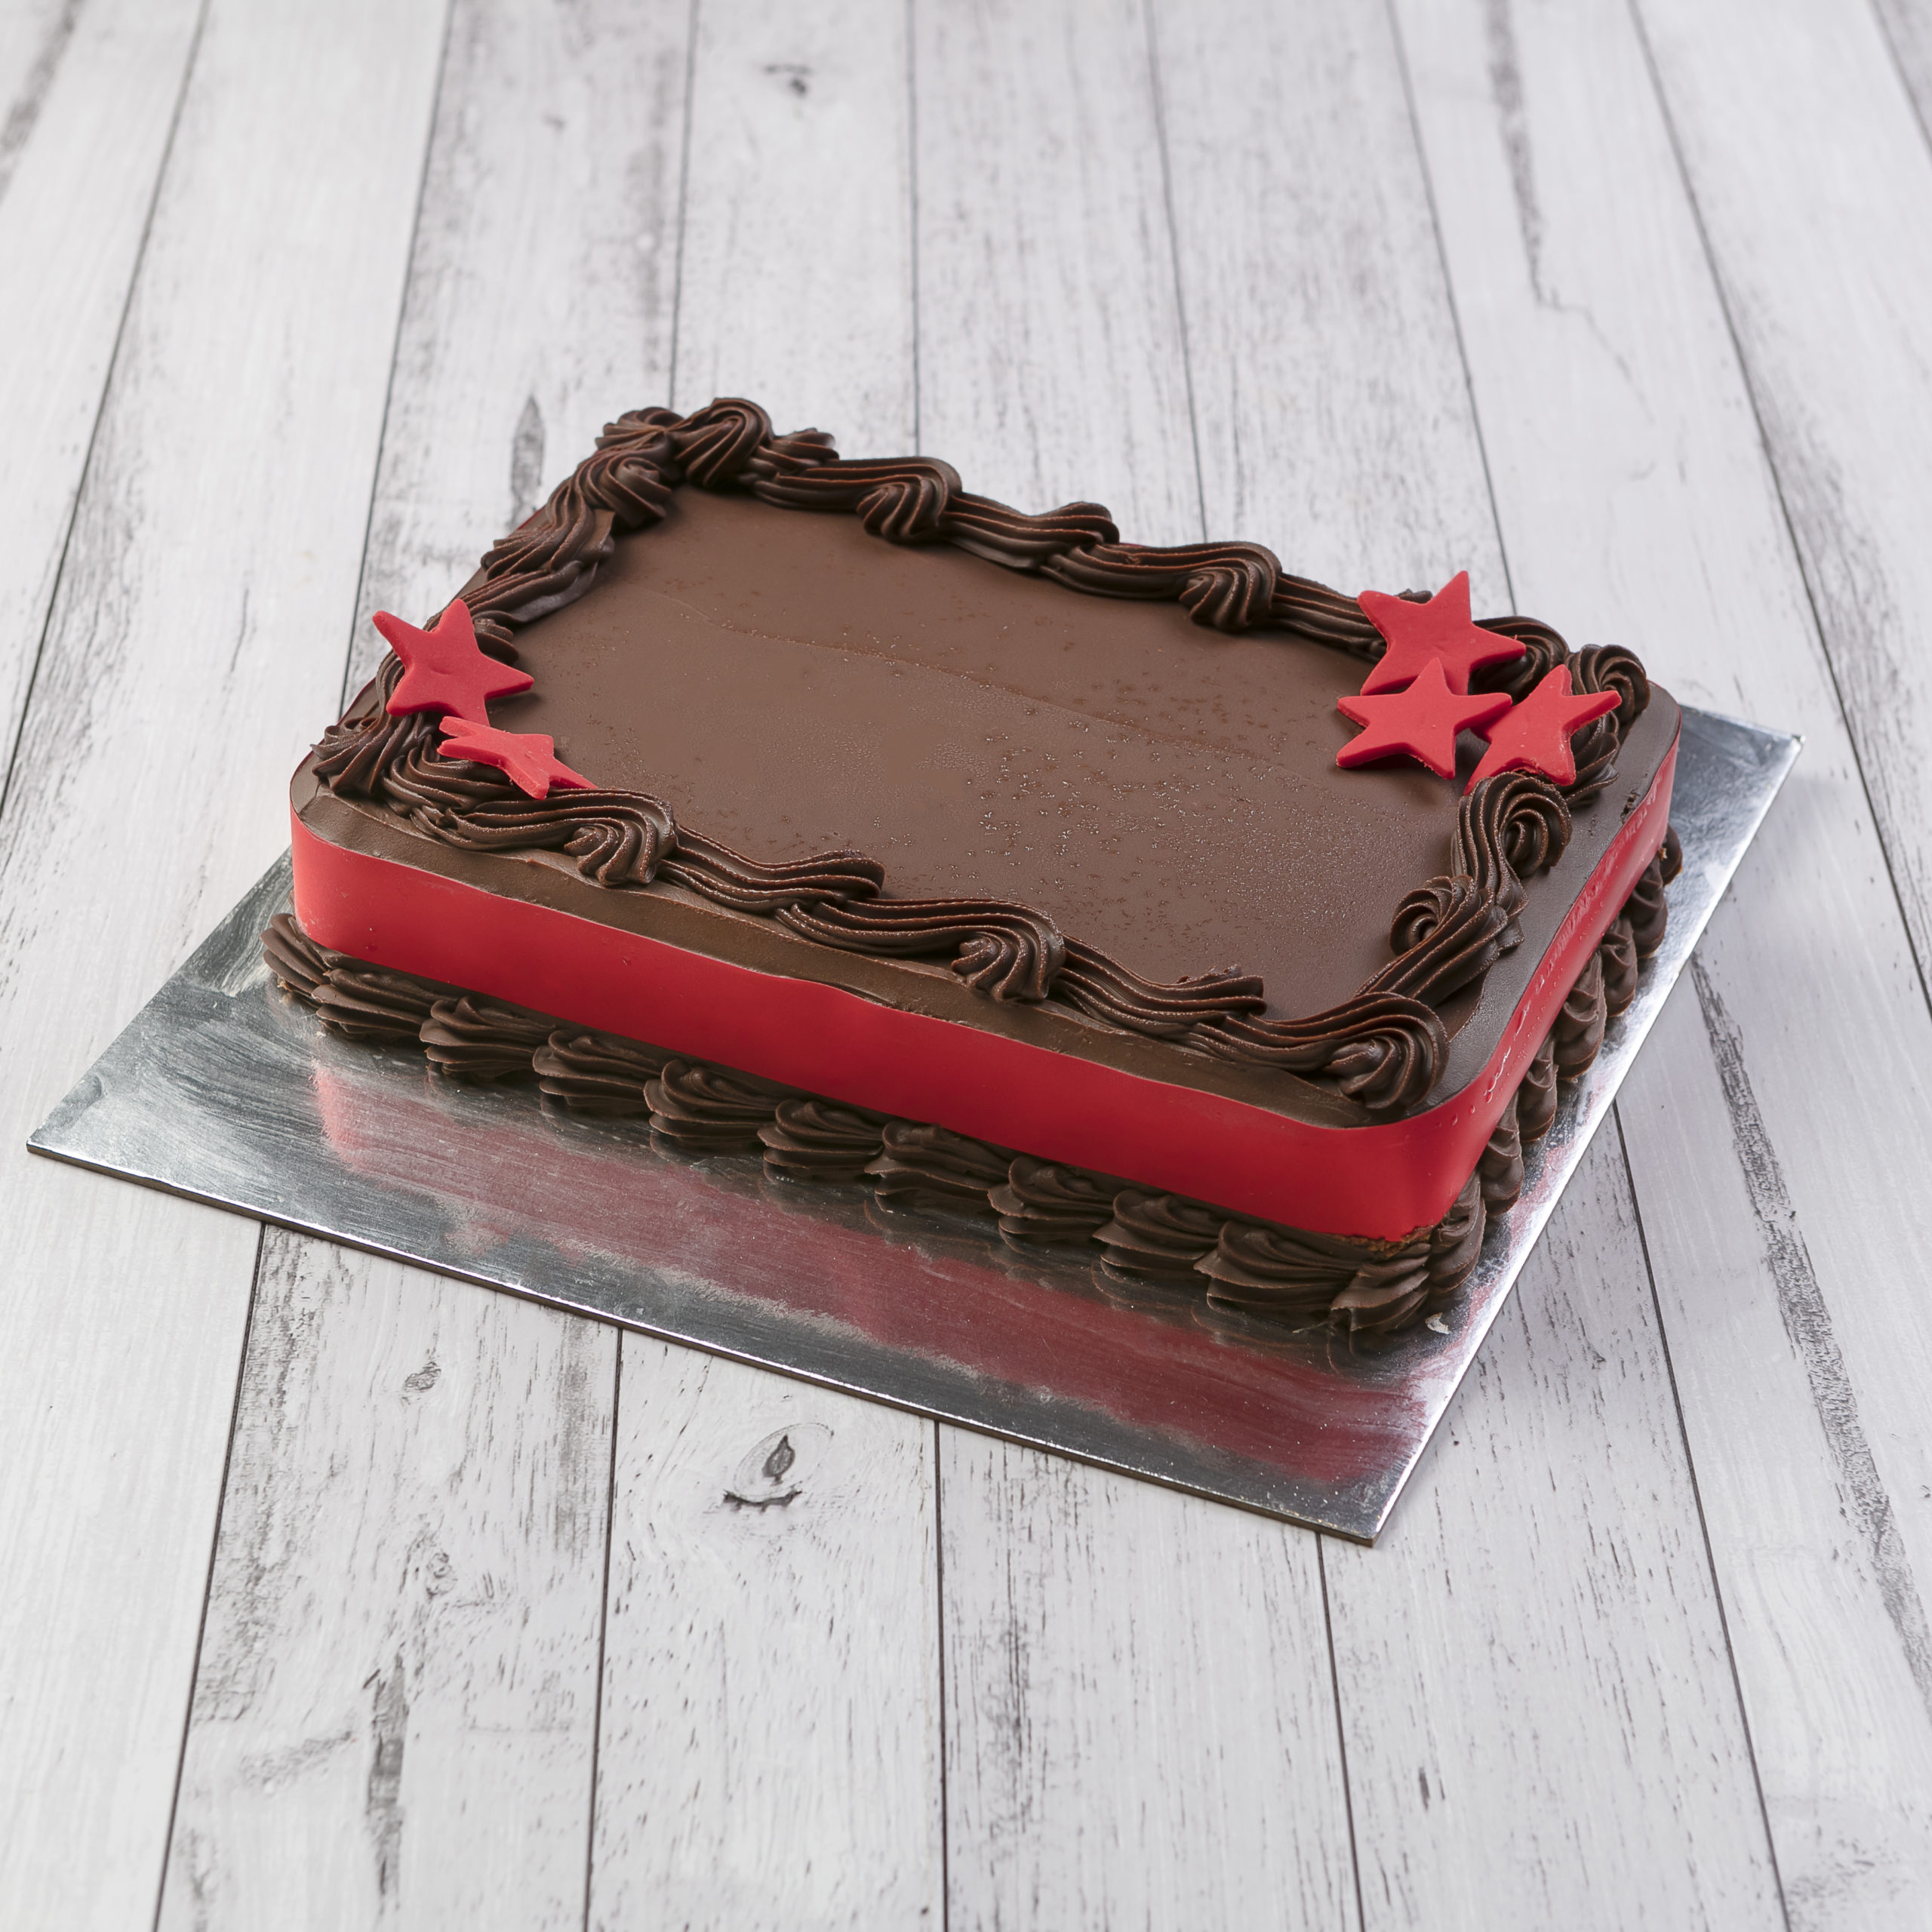 Simple Cake Design | Gatsy Cakes-sgquangbinhtourist.com.vn